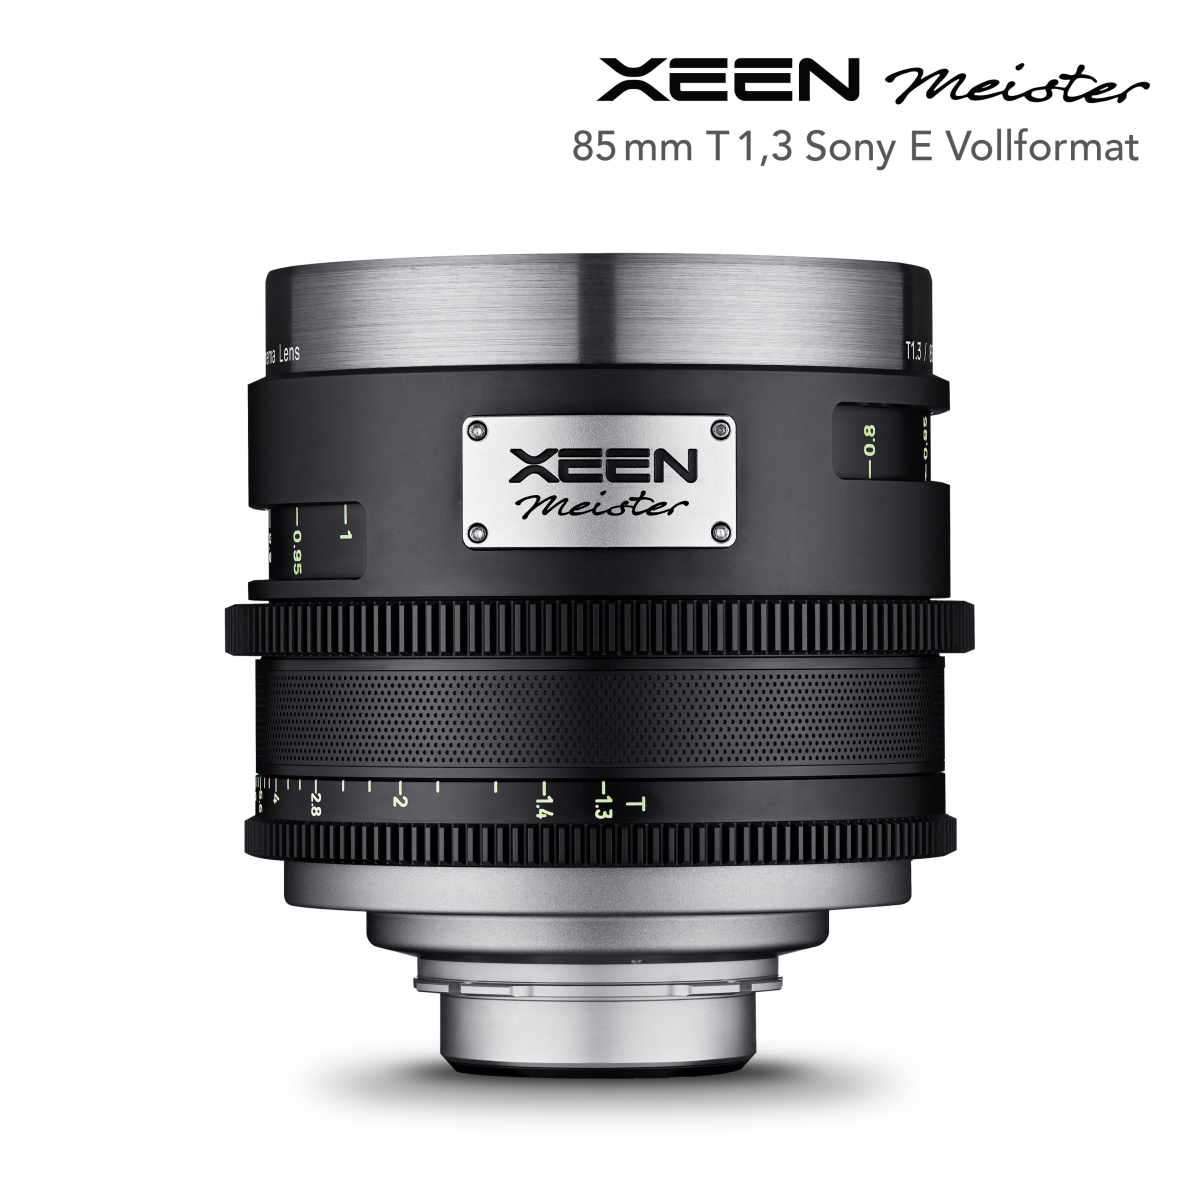 XEEN Meister 85mm T1.3 Sony E Vollformat